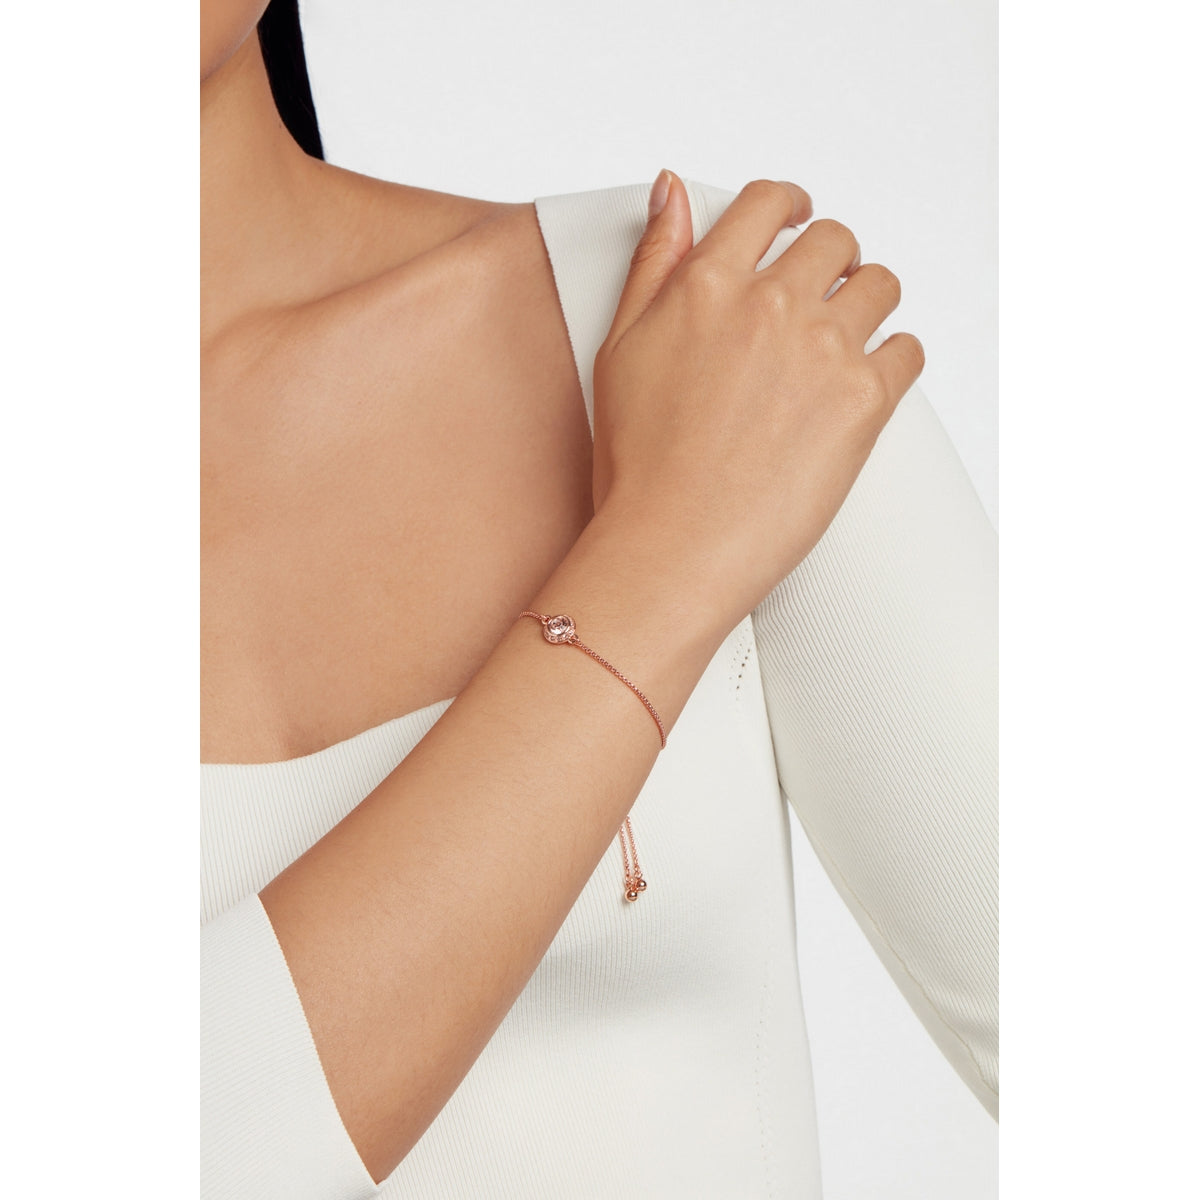 ted baker soleta: solitaire sparkle crystal adjustable bracelet rose gold tone,rose crystal